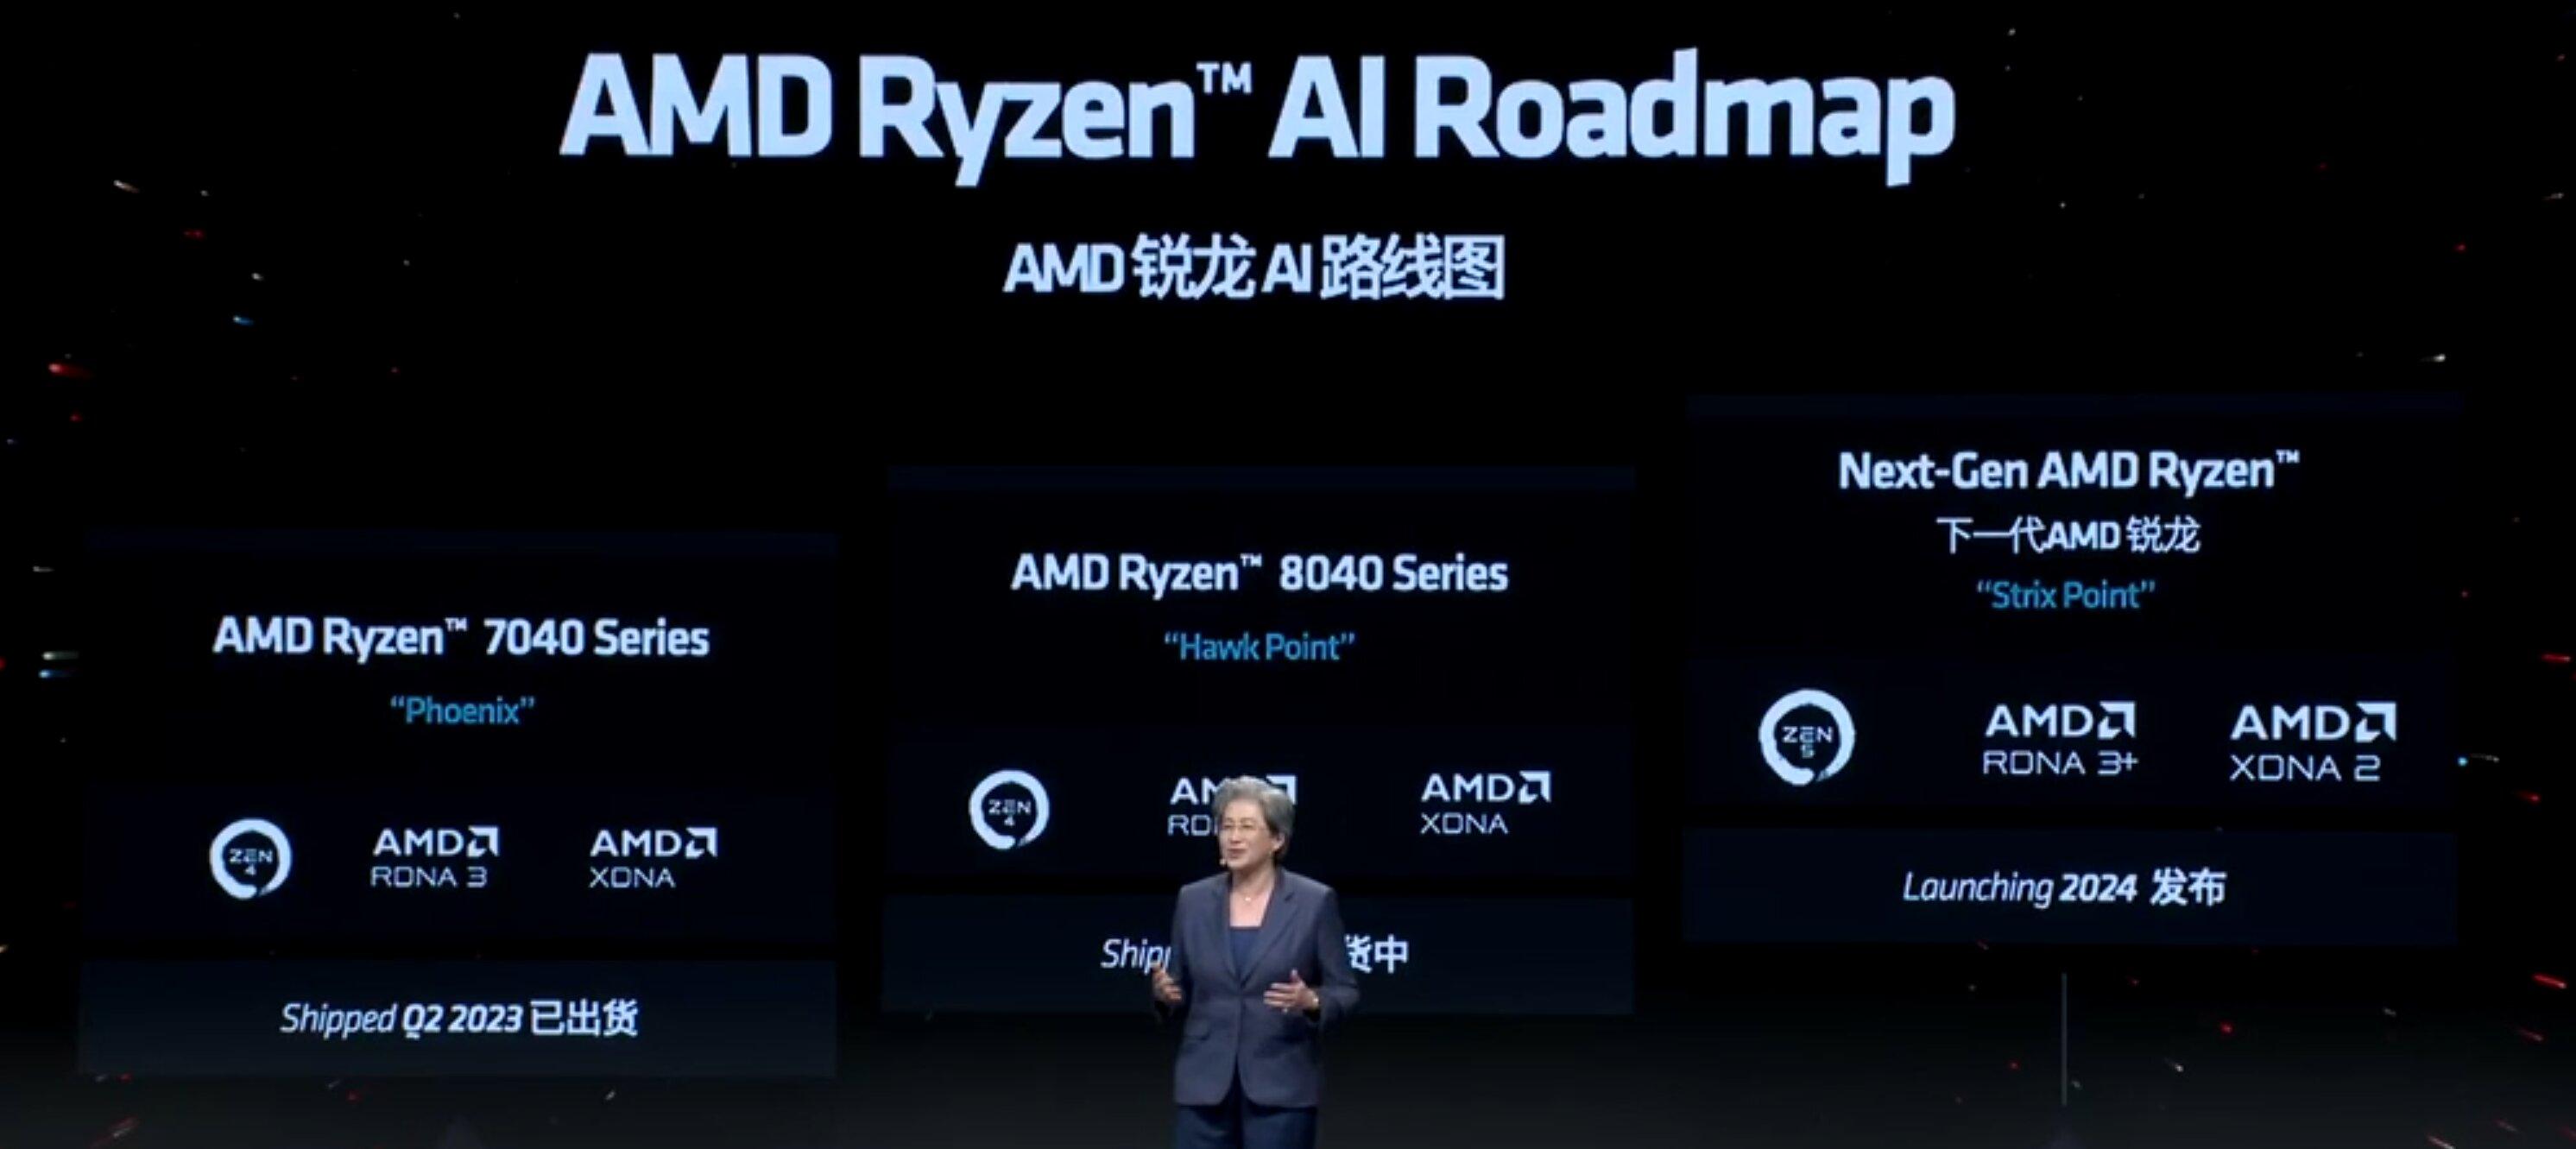 AMD parle d'architecture RDNA 3+ pour les Ryzen Strix, des processeurs attendus en 2024